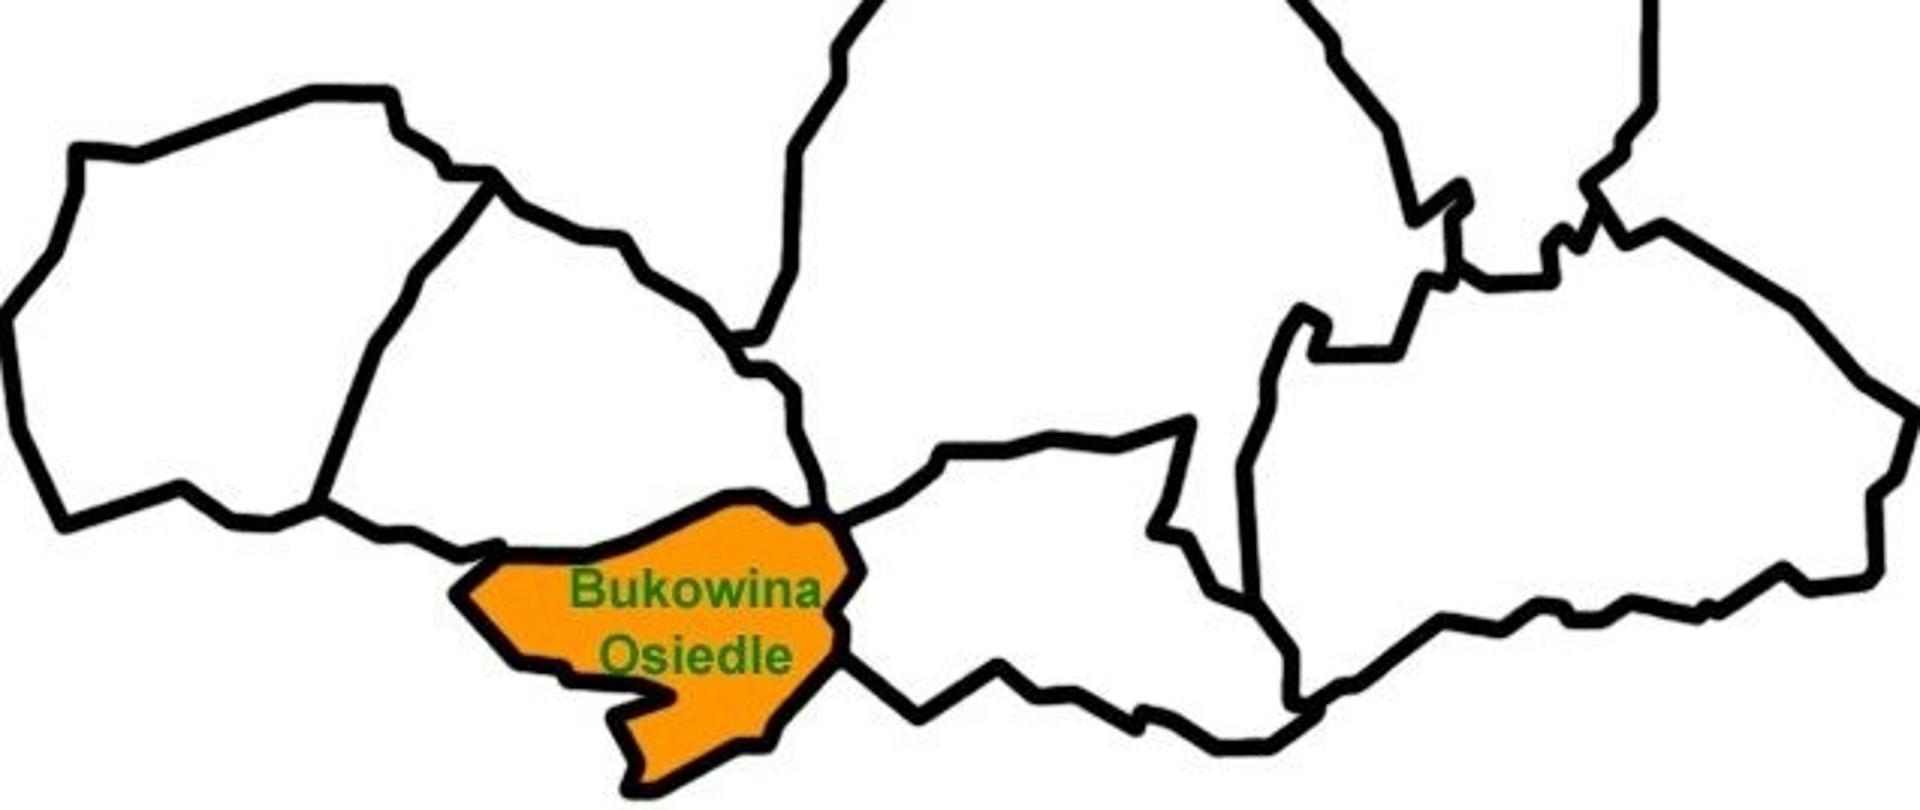 Zdjęcie przedstawia zarys gminy Raba Wyżna z zaznaczonym na kolor pomarańczowy sołectwem Bukowina Osiedle